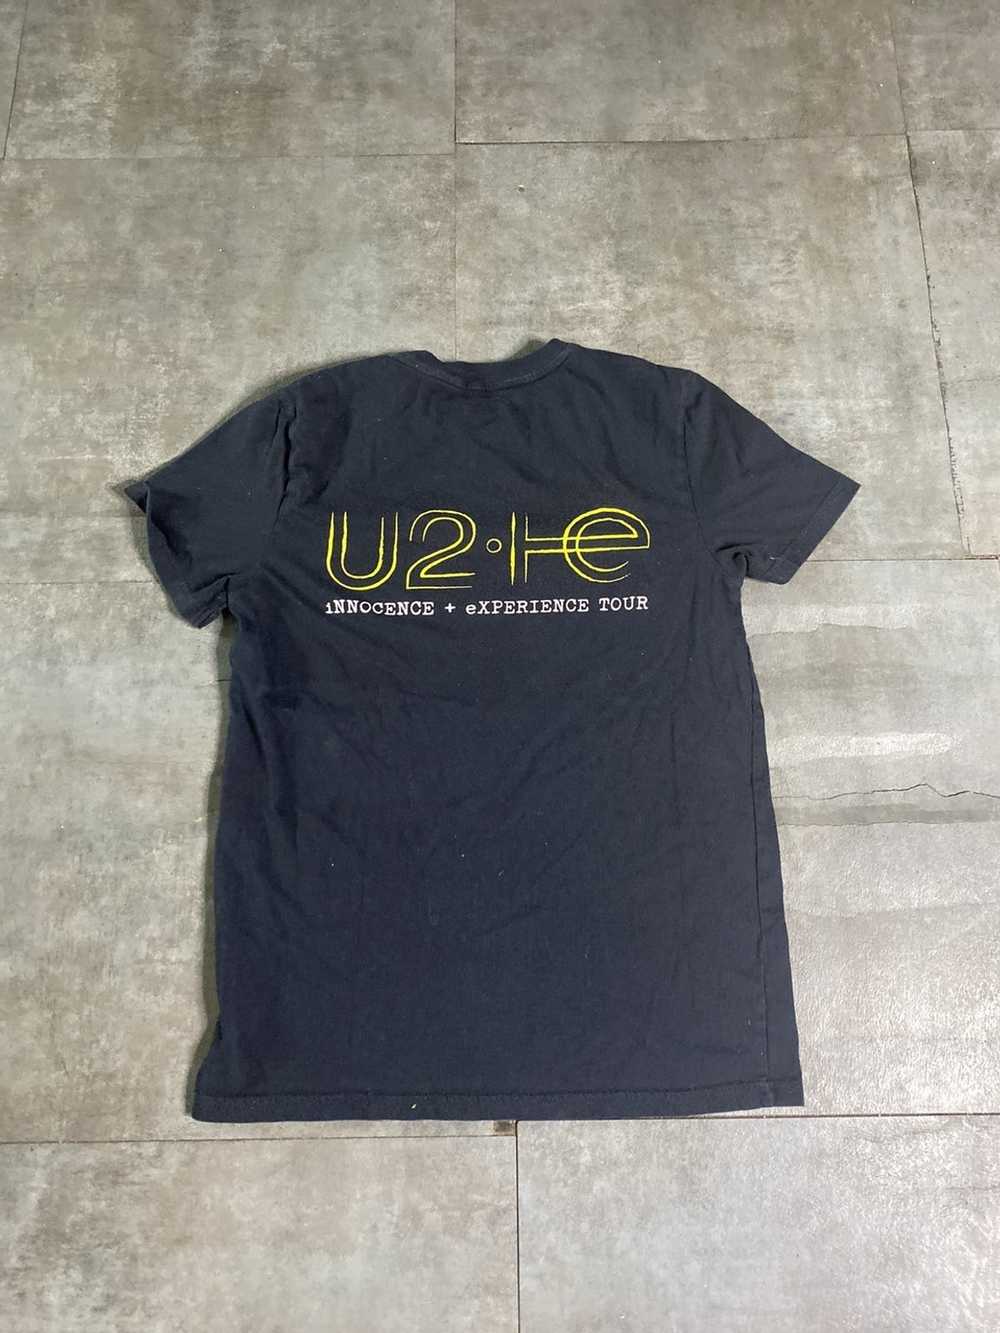 Band Tees 2013 U2 tour tee. - image 3